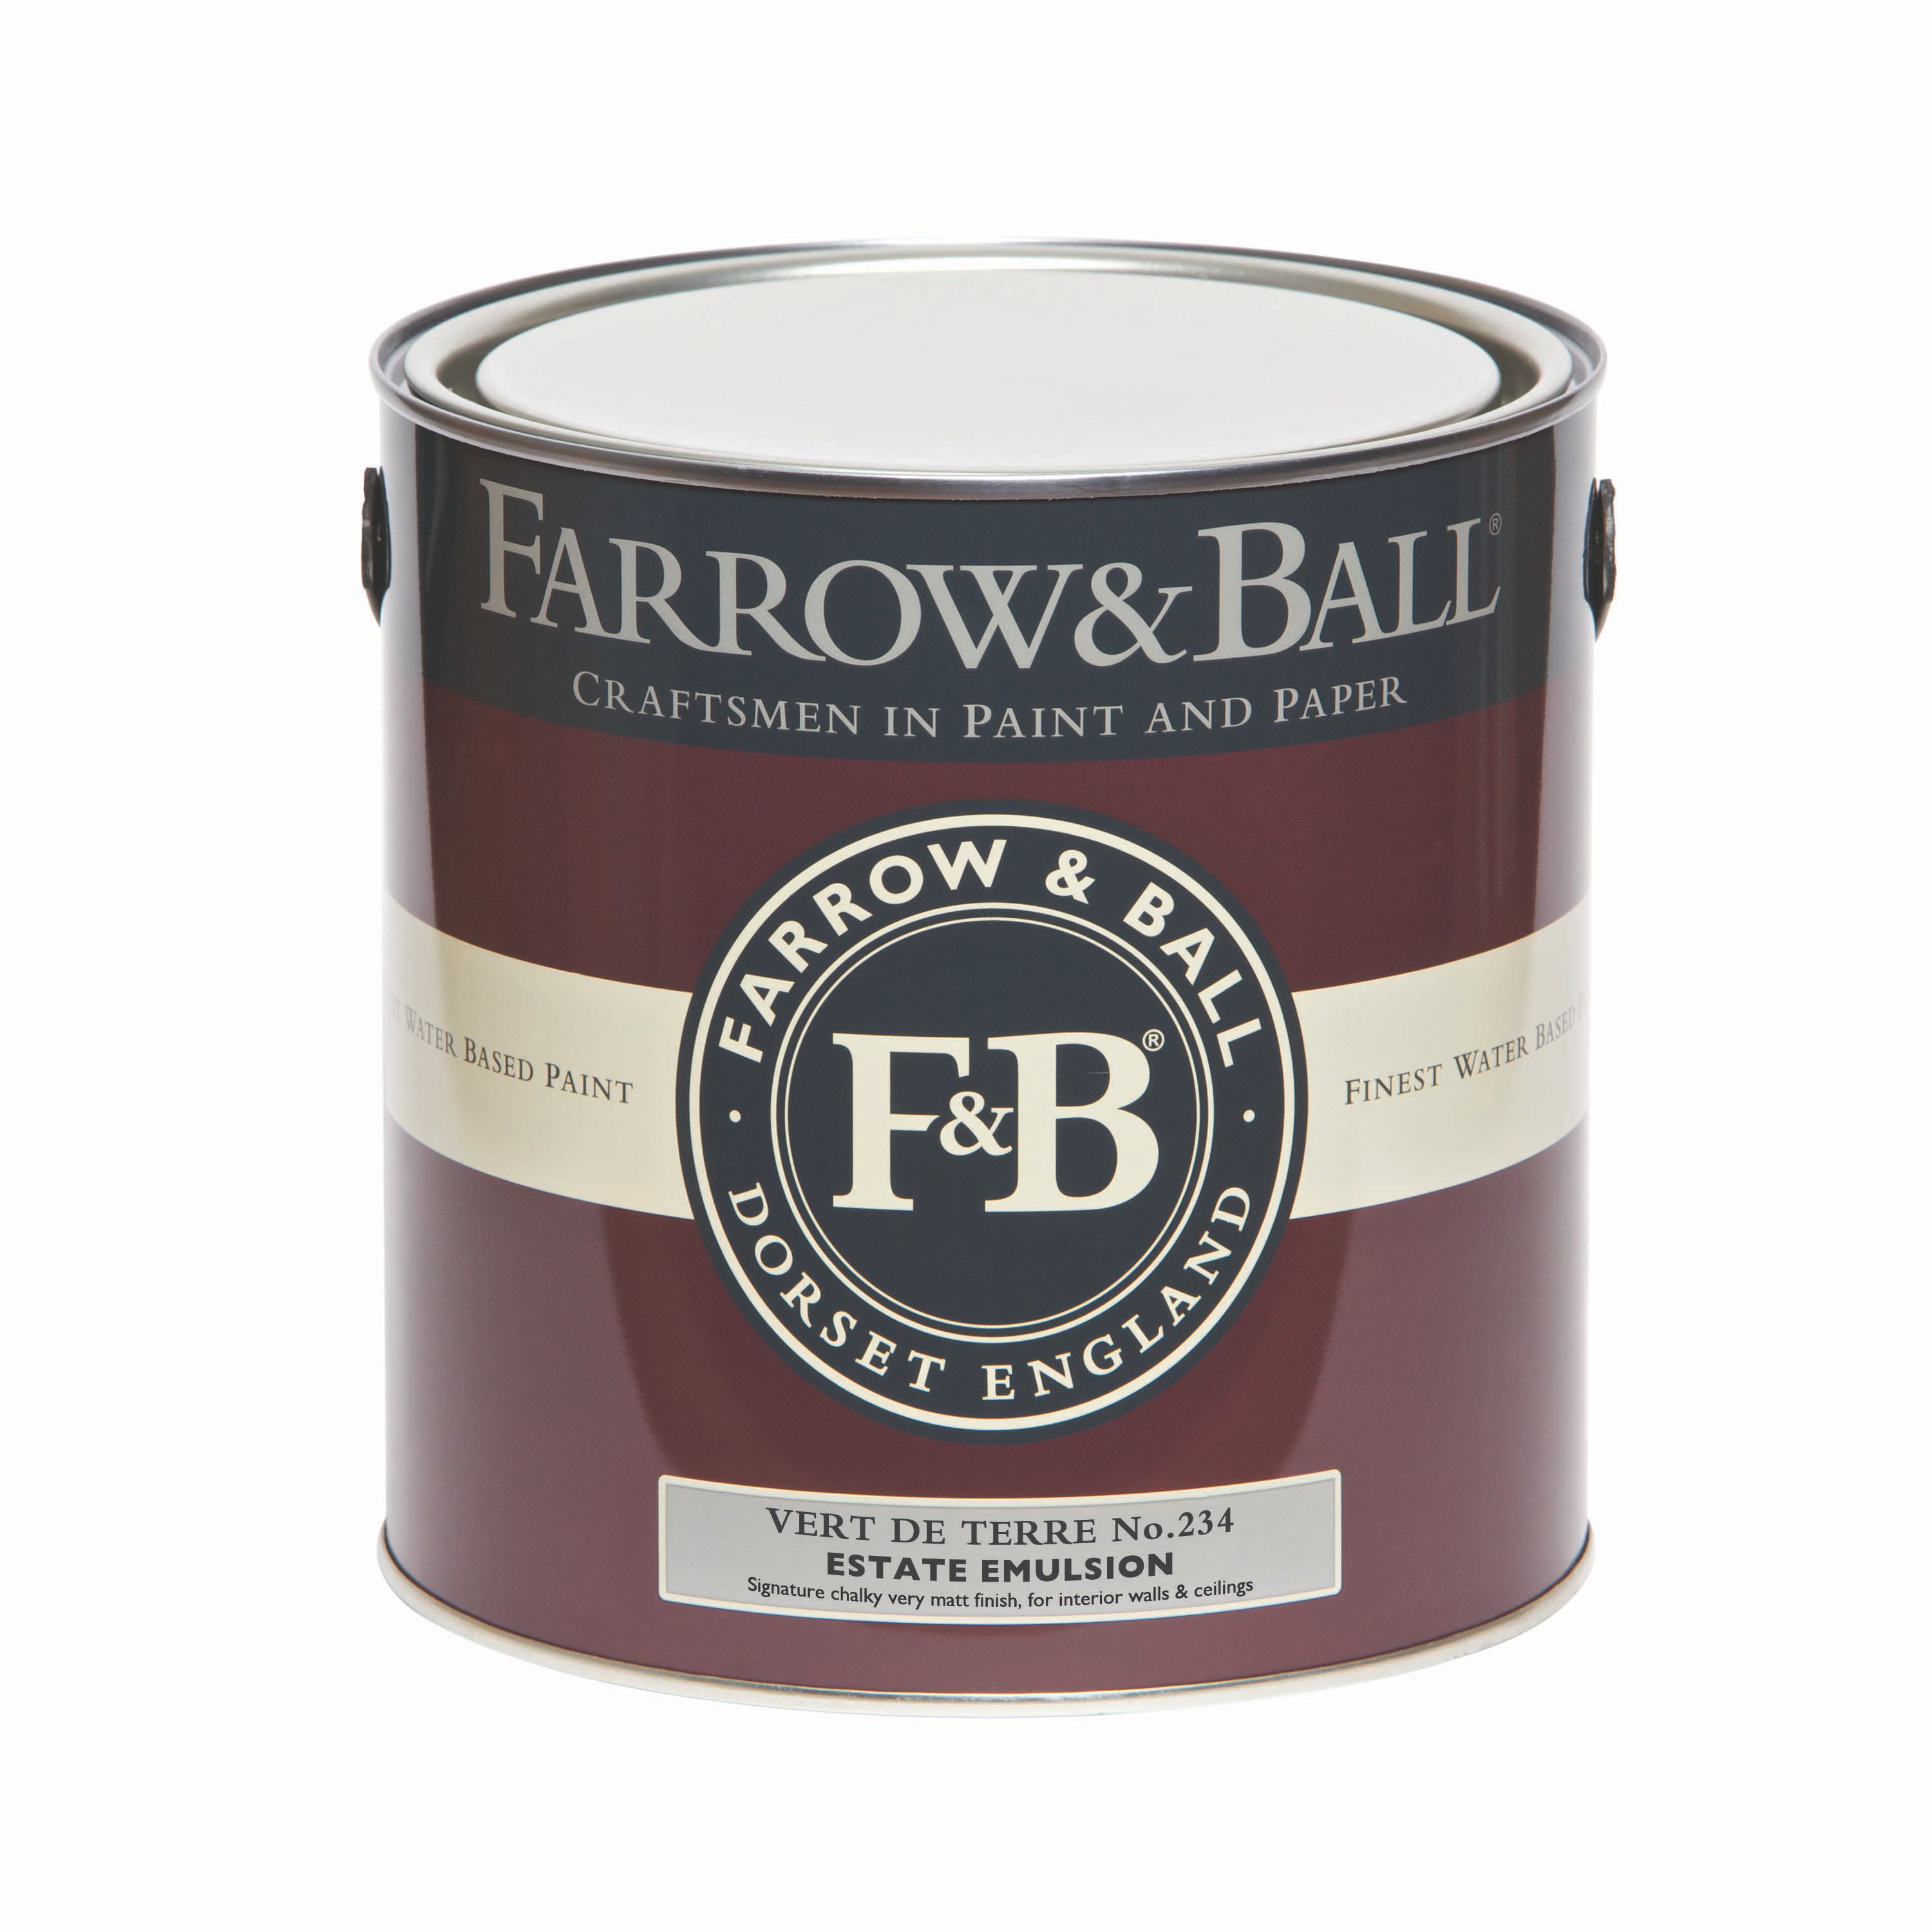 Farrow & Ball Estate Vert de terre No.234 Matt Emulsion paint, 2.5L Tester pot